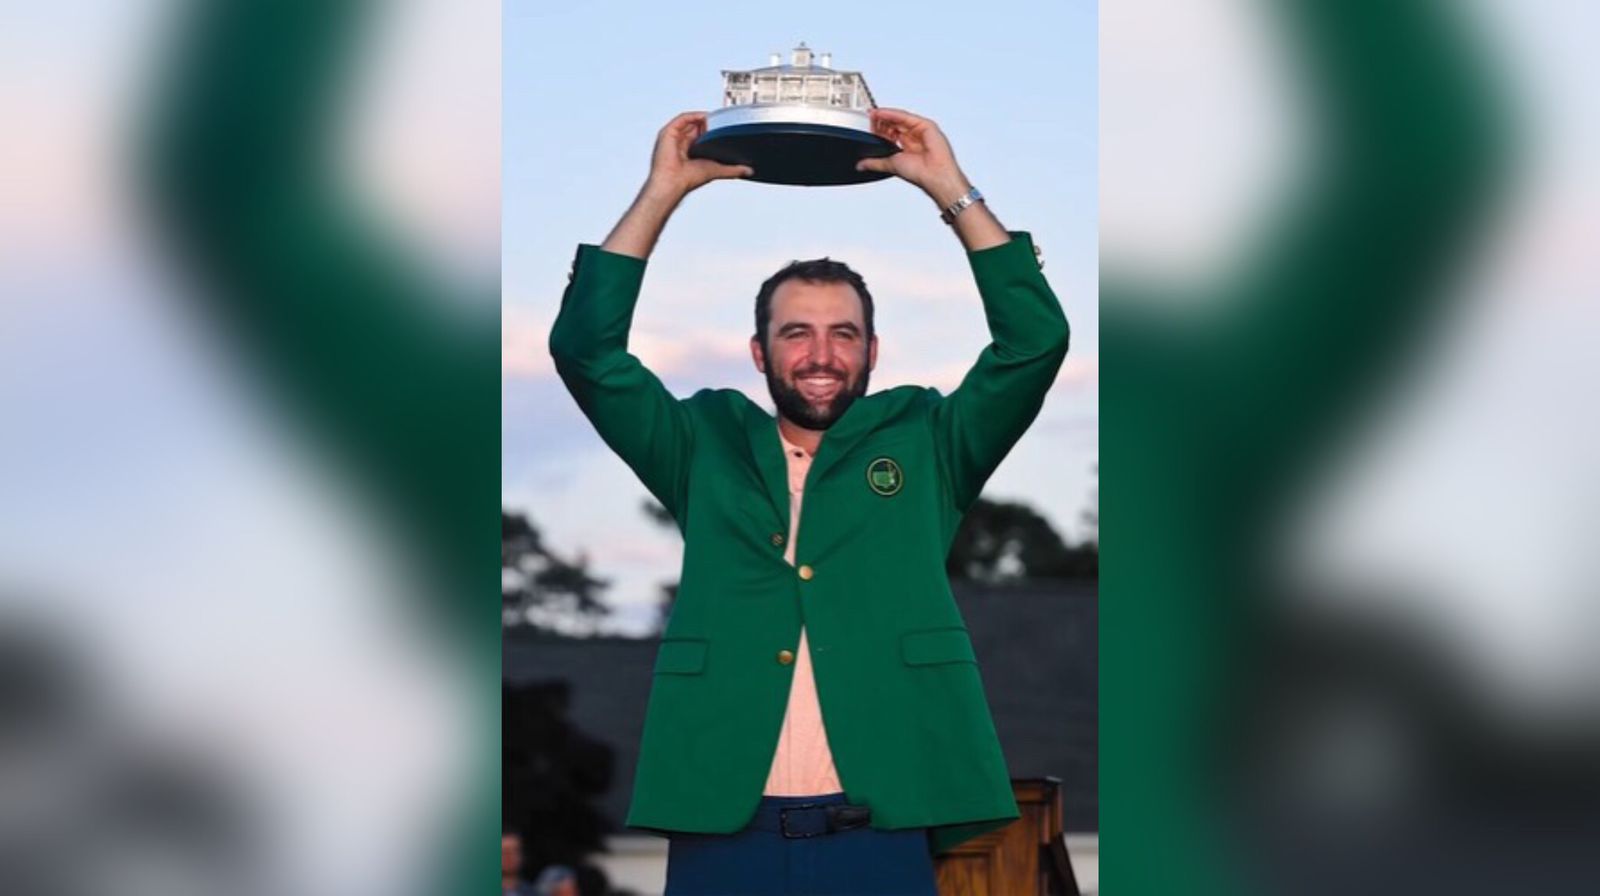 Jogador número 1 de golfe dedica troféu a Deus: ‘Meu talento é para a glória Dele’